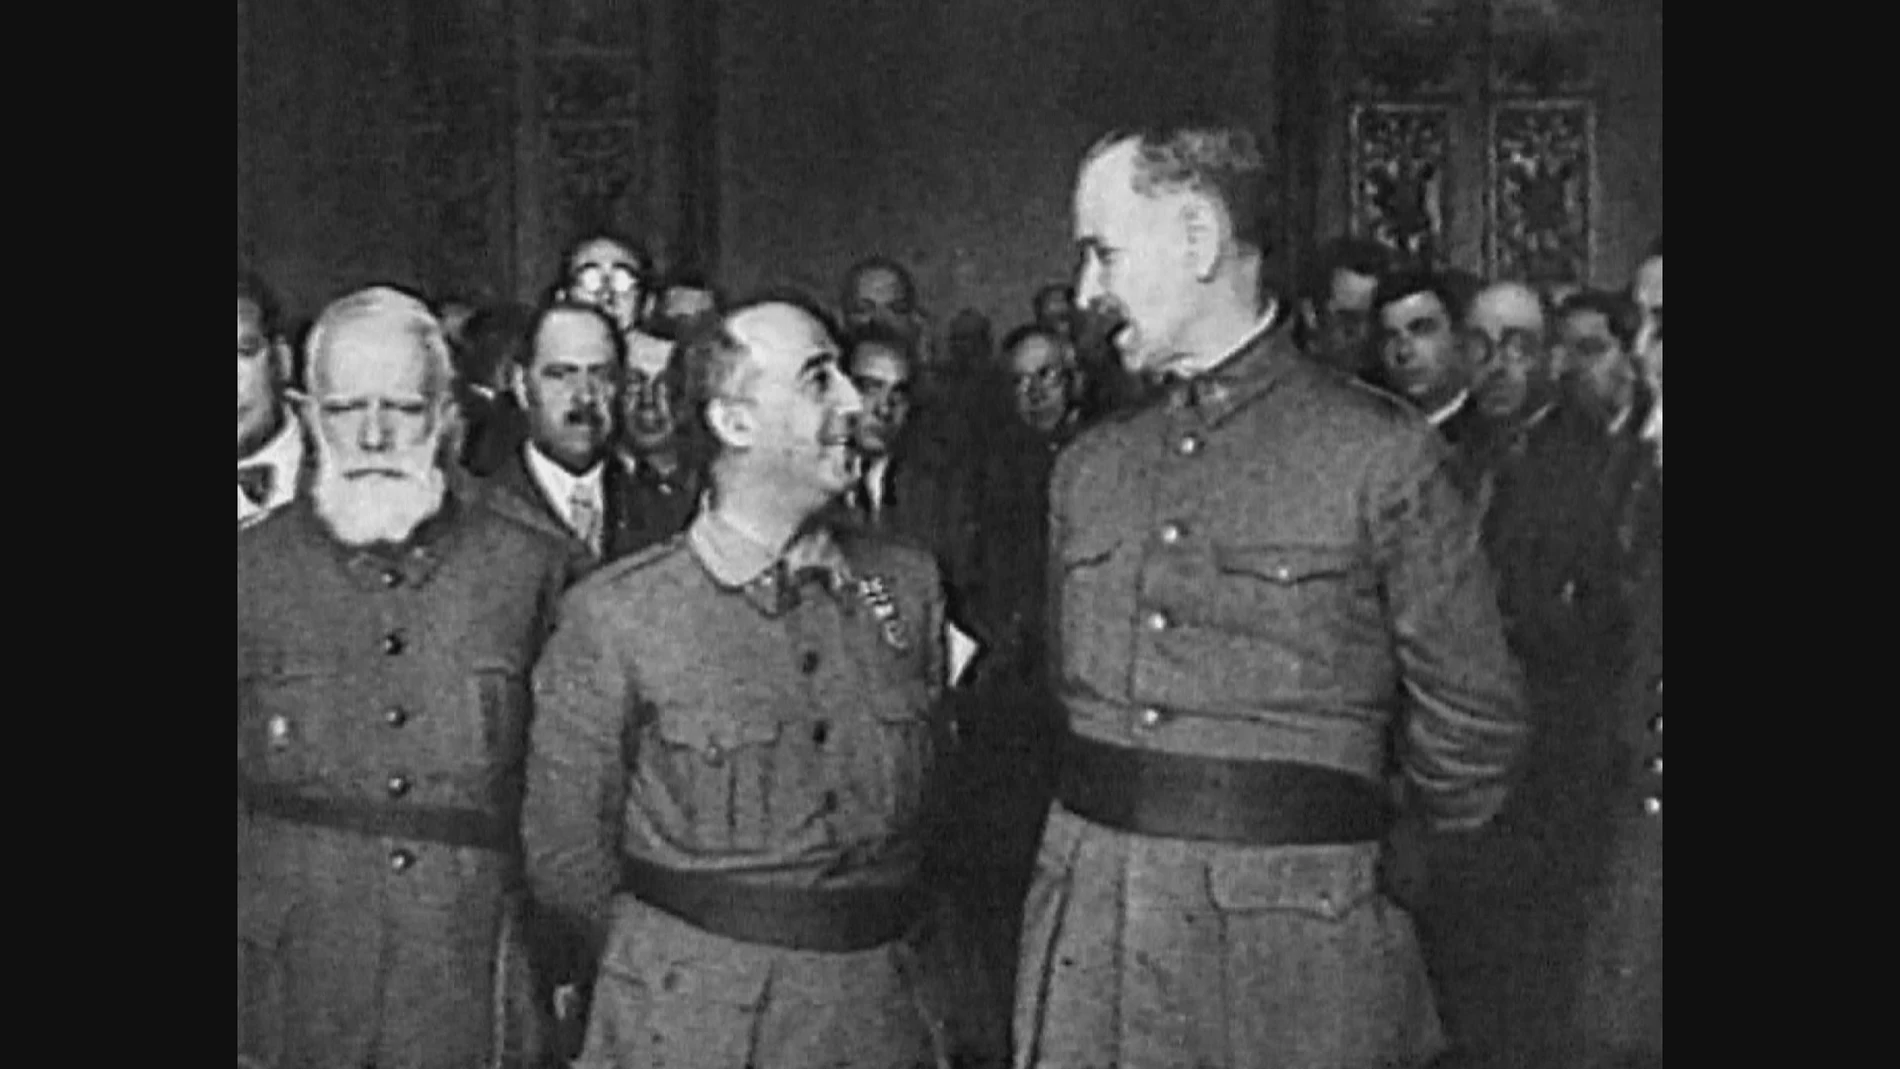 Franco concedió títulos nobiliarios a sádicos generales